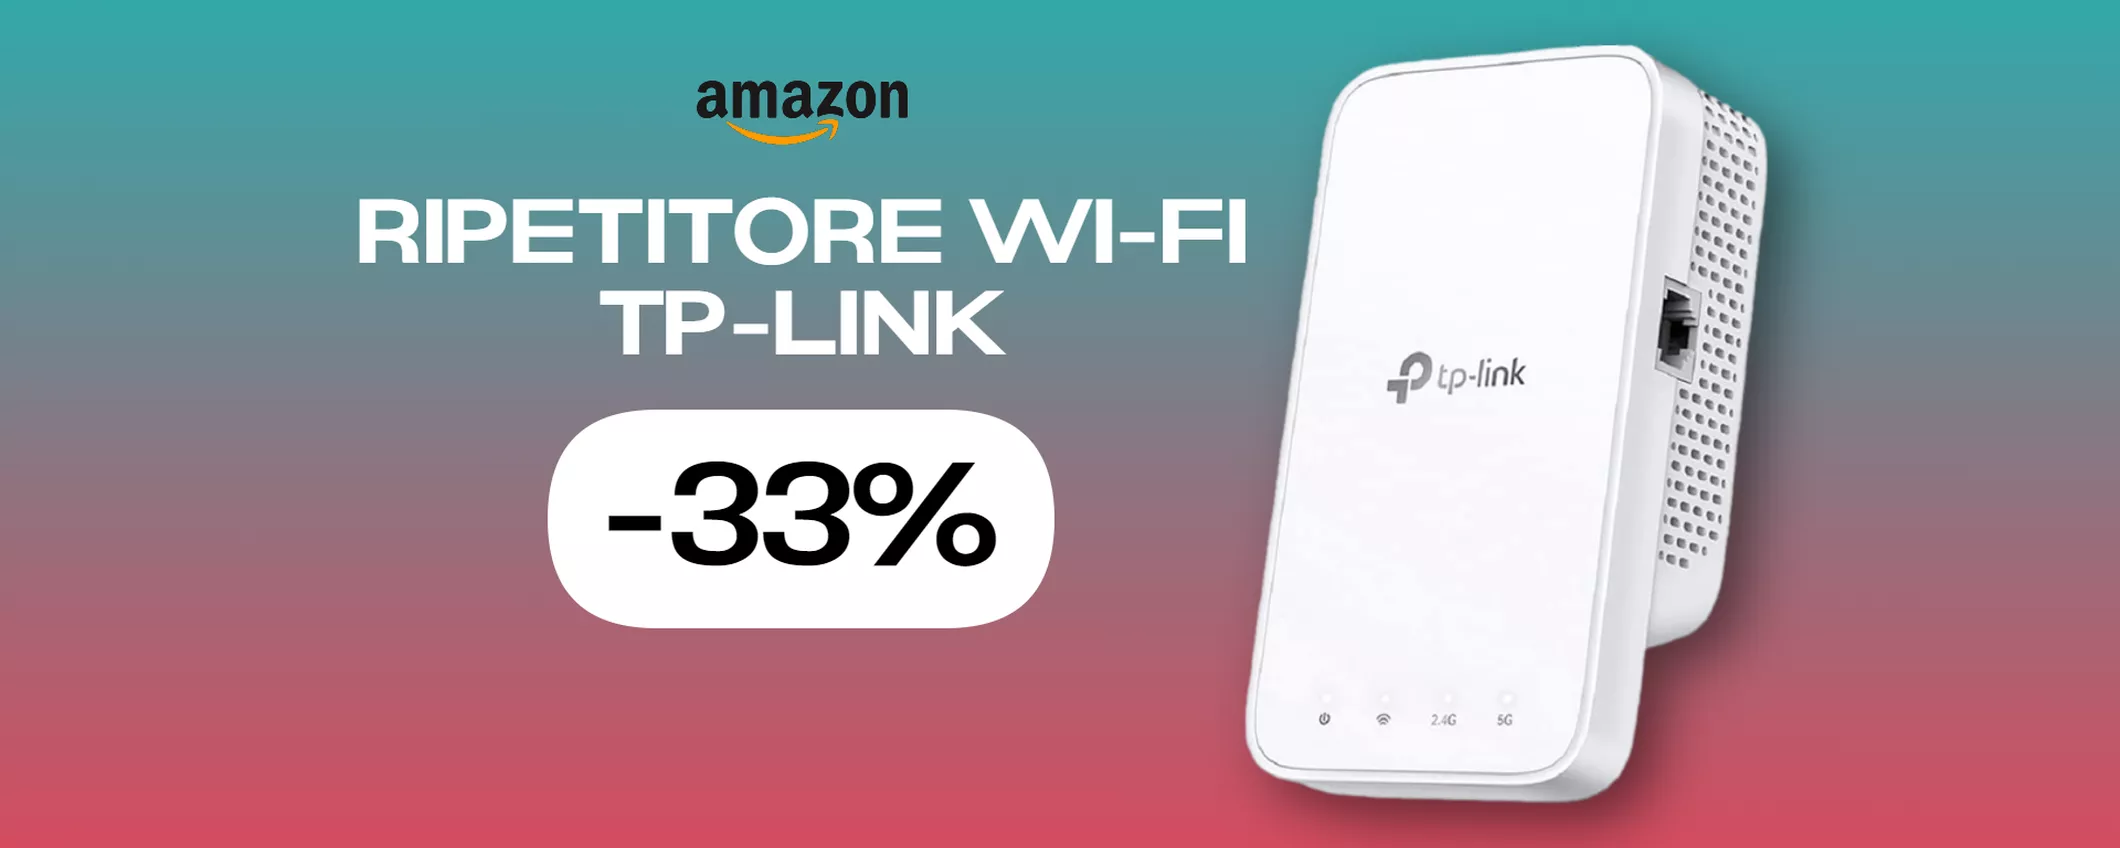 Ripetitore Wi-Fi TP-Link, il tuo miglior alleato contro i problemi di rete (-33%)